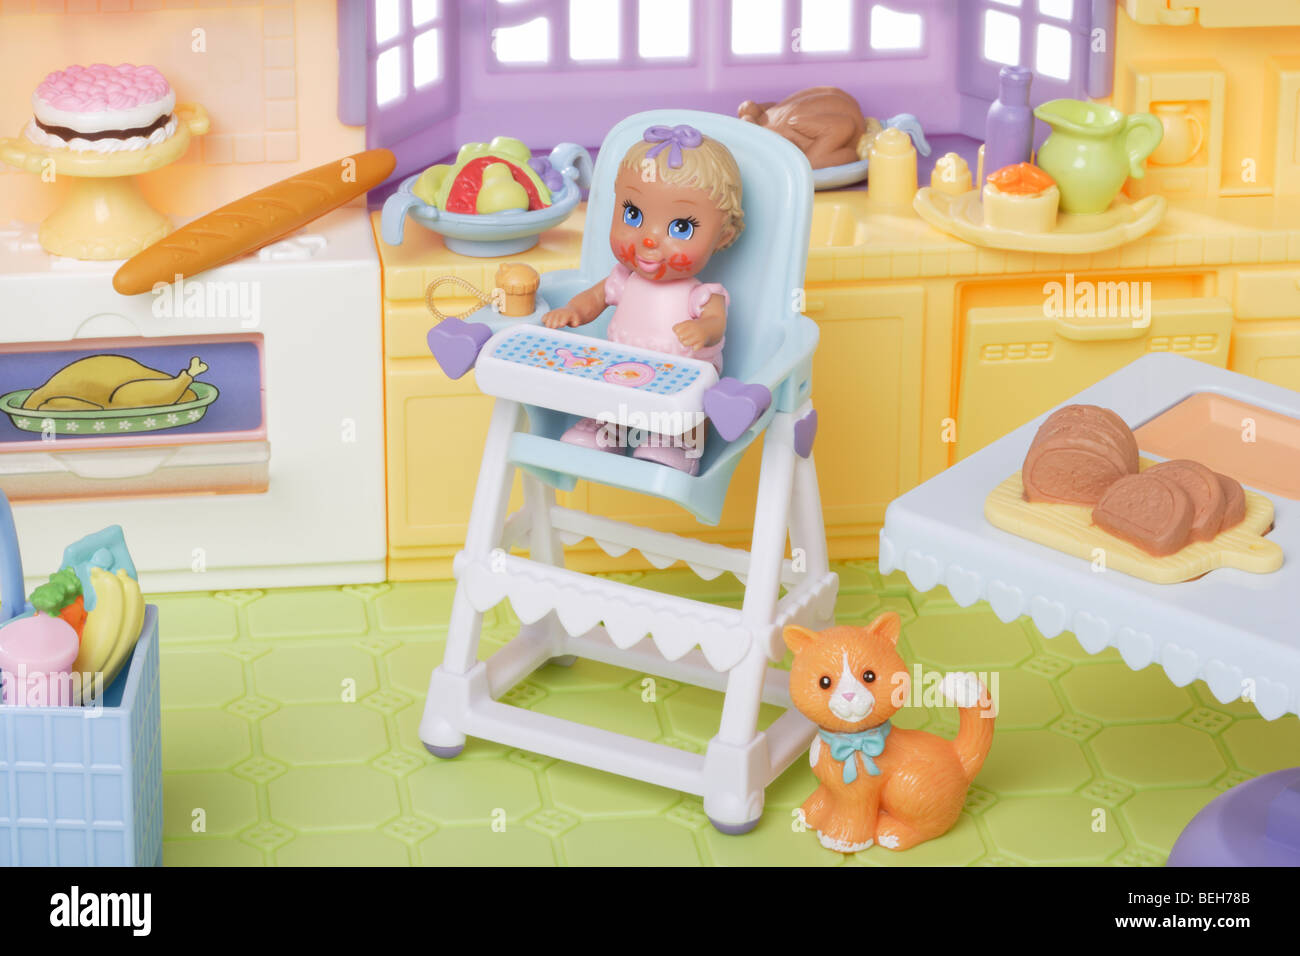 Jeune enfant poupée dans une chaise haute dans la cuisine Banque D'Images